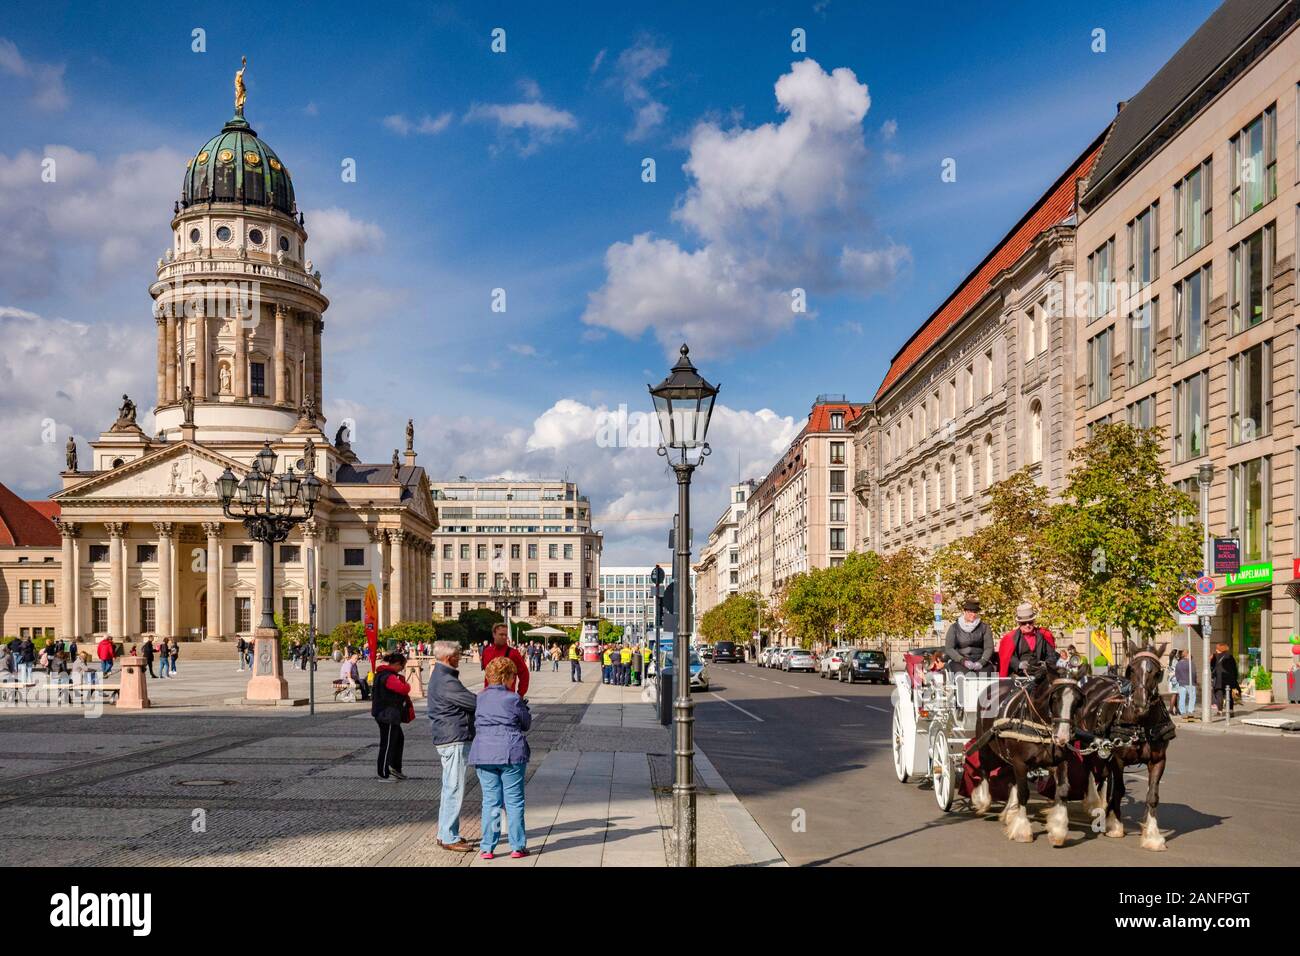 22 Settembre 2018: Berlino, Germania - Giro in carrozza nella piazza Gendarmenmarkt, con la chiesa francese sulla sinistra, i turisti a guardare come g Foto Stock